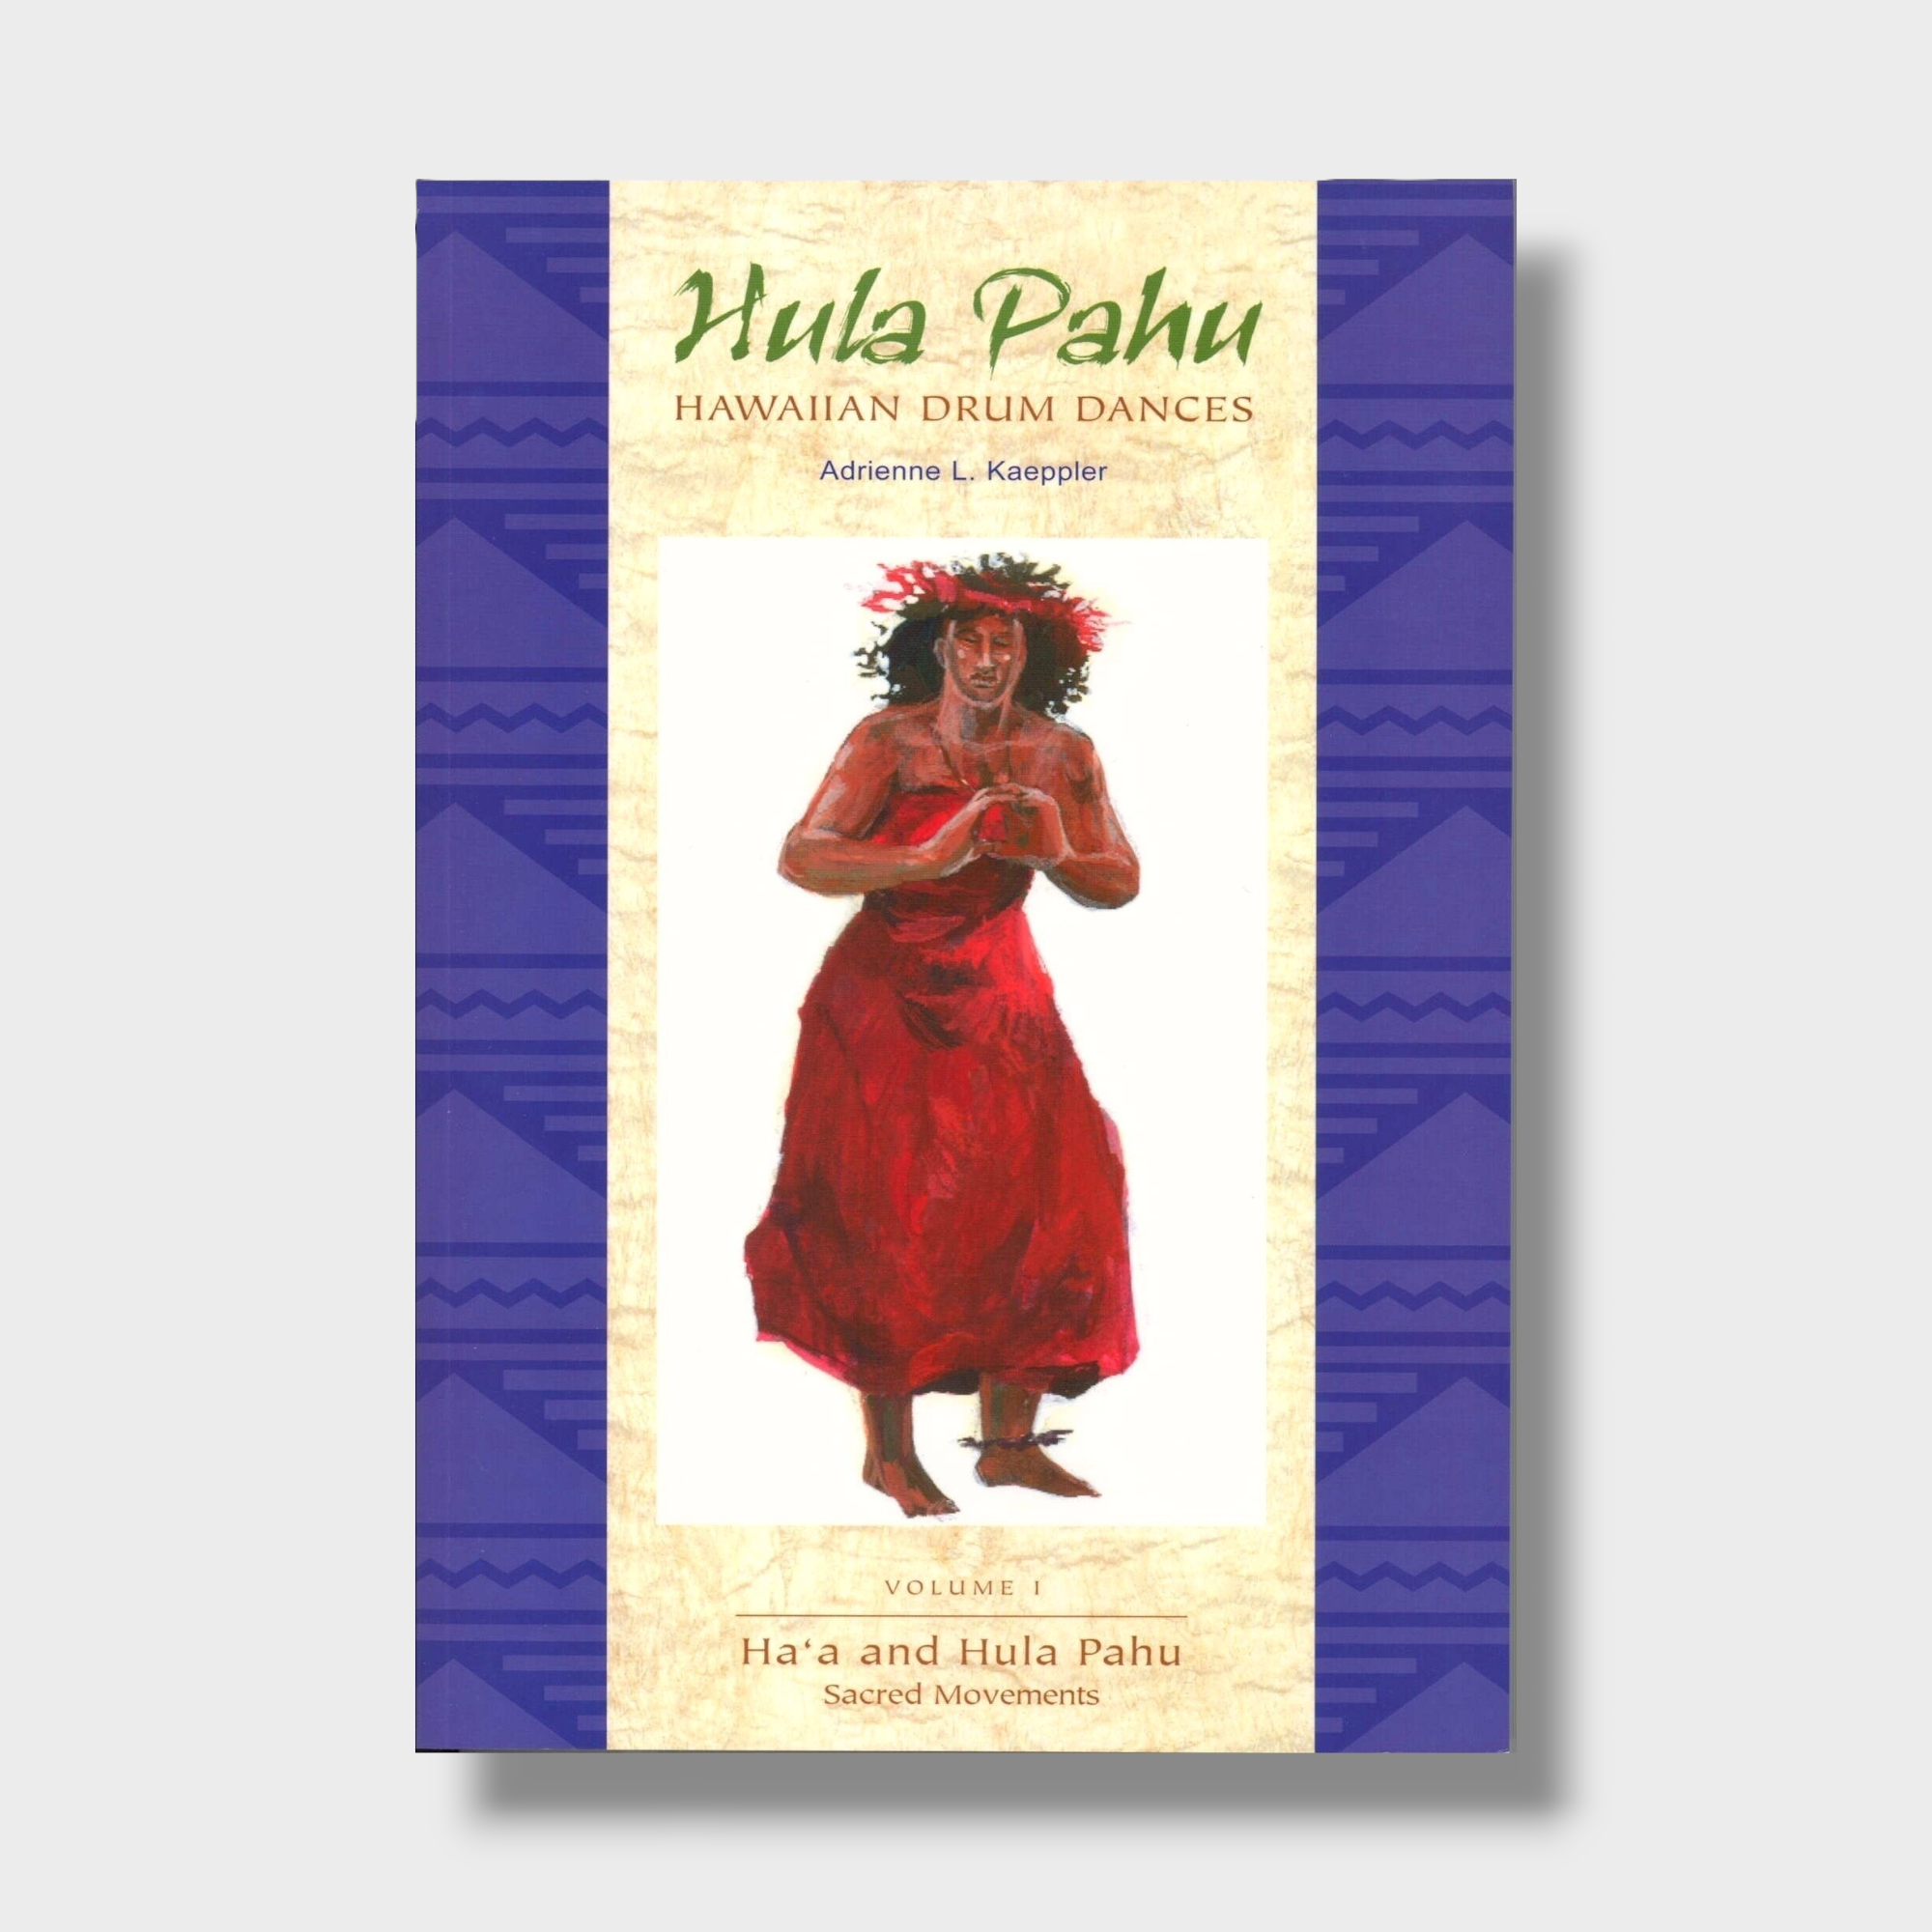 Hula Pahu, Hawaiian Drum Dances, Volume I: Haʻa and Hula Pahu, Sacred Movements